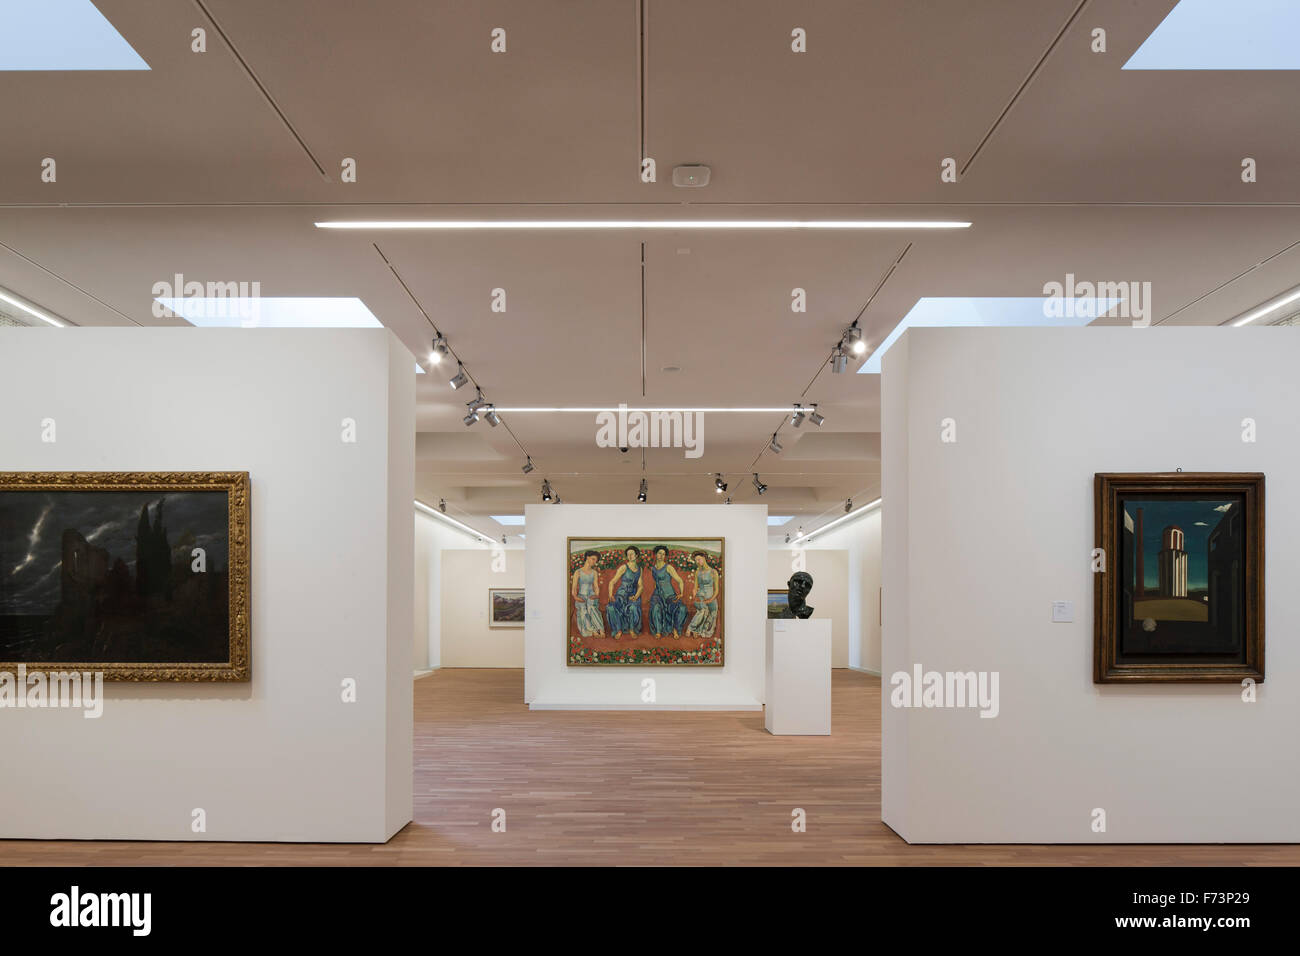 L'espace d'exposition. Centre d'Art du Lac Lugano, Lugano, Suisse. Architecte : Ivano Gianola Studio d'architettura, 2015. Banque D'Images